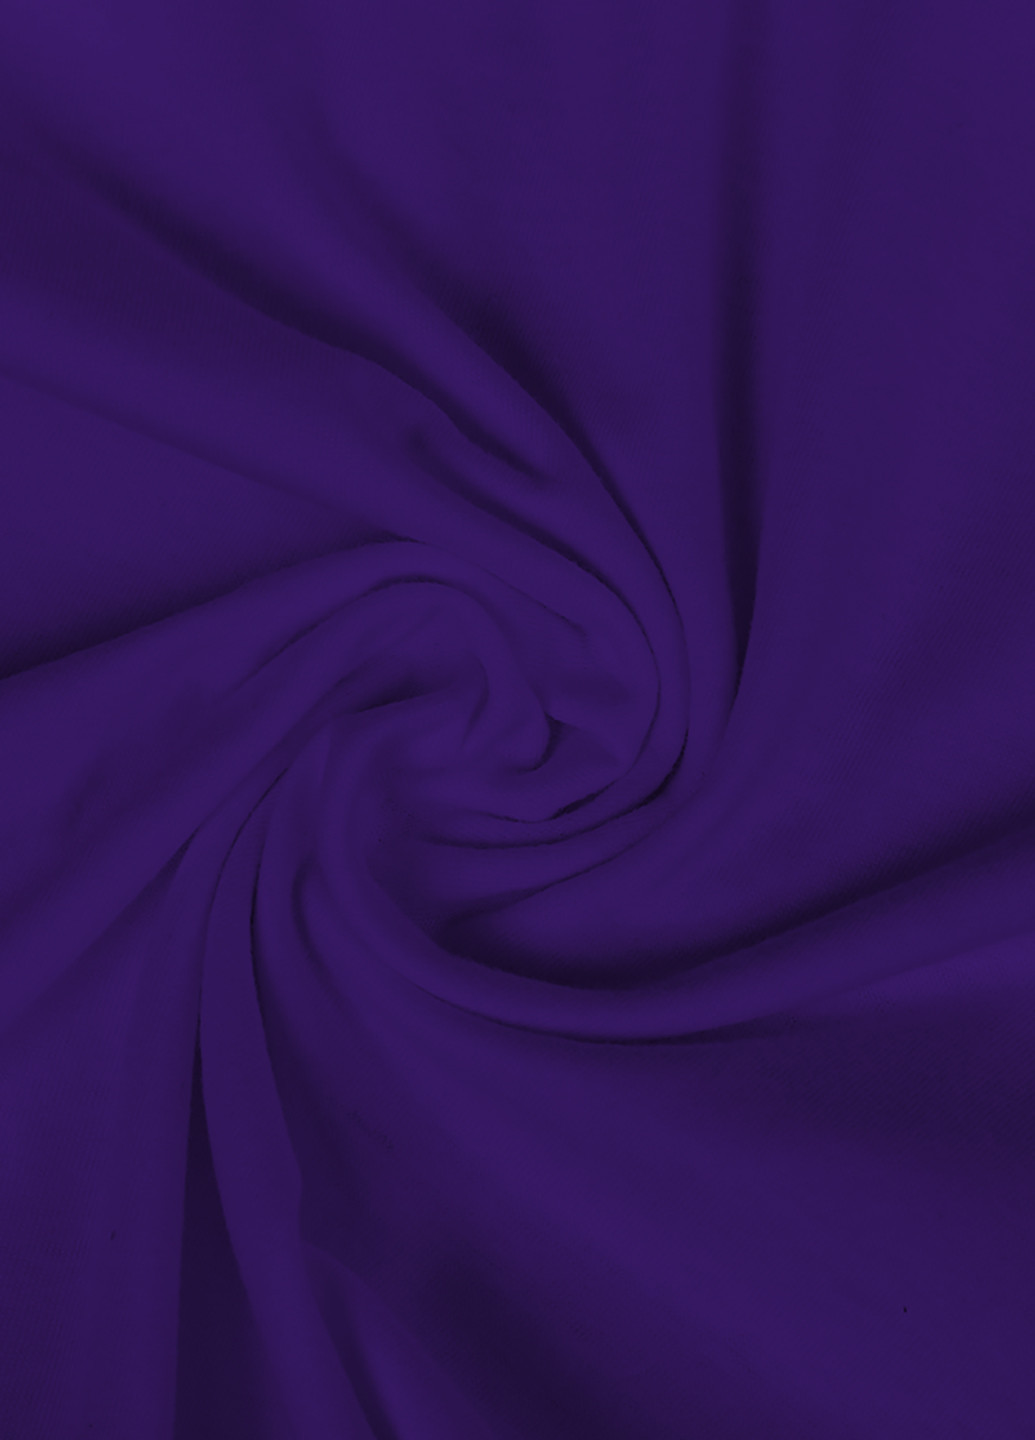 Фіолетова демісезонна футболка дитяча рік санчез рік і морті (rick sanchez rick and morty) (9224-2632) MobiPrint